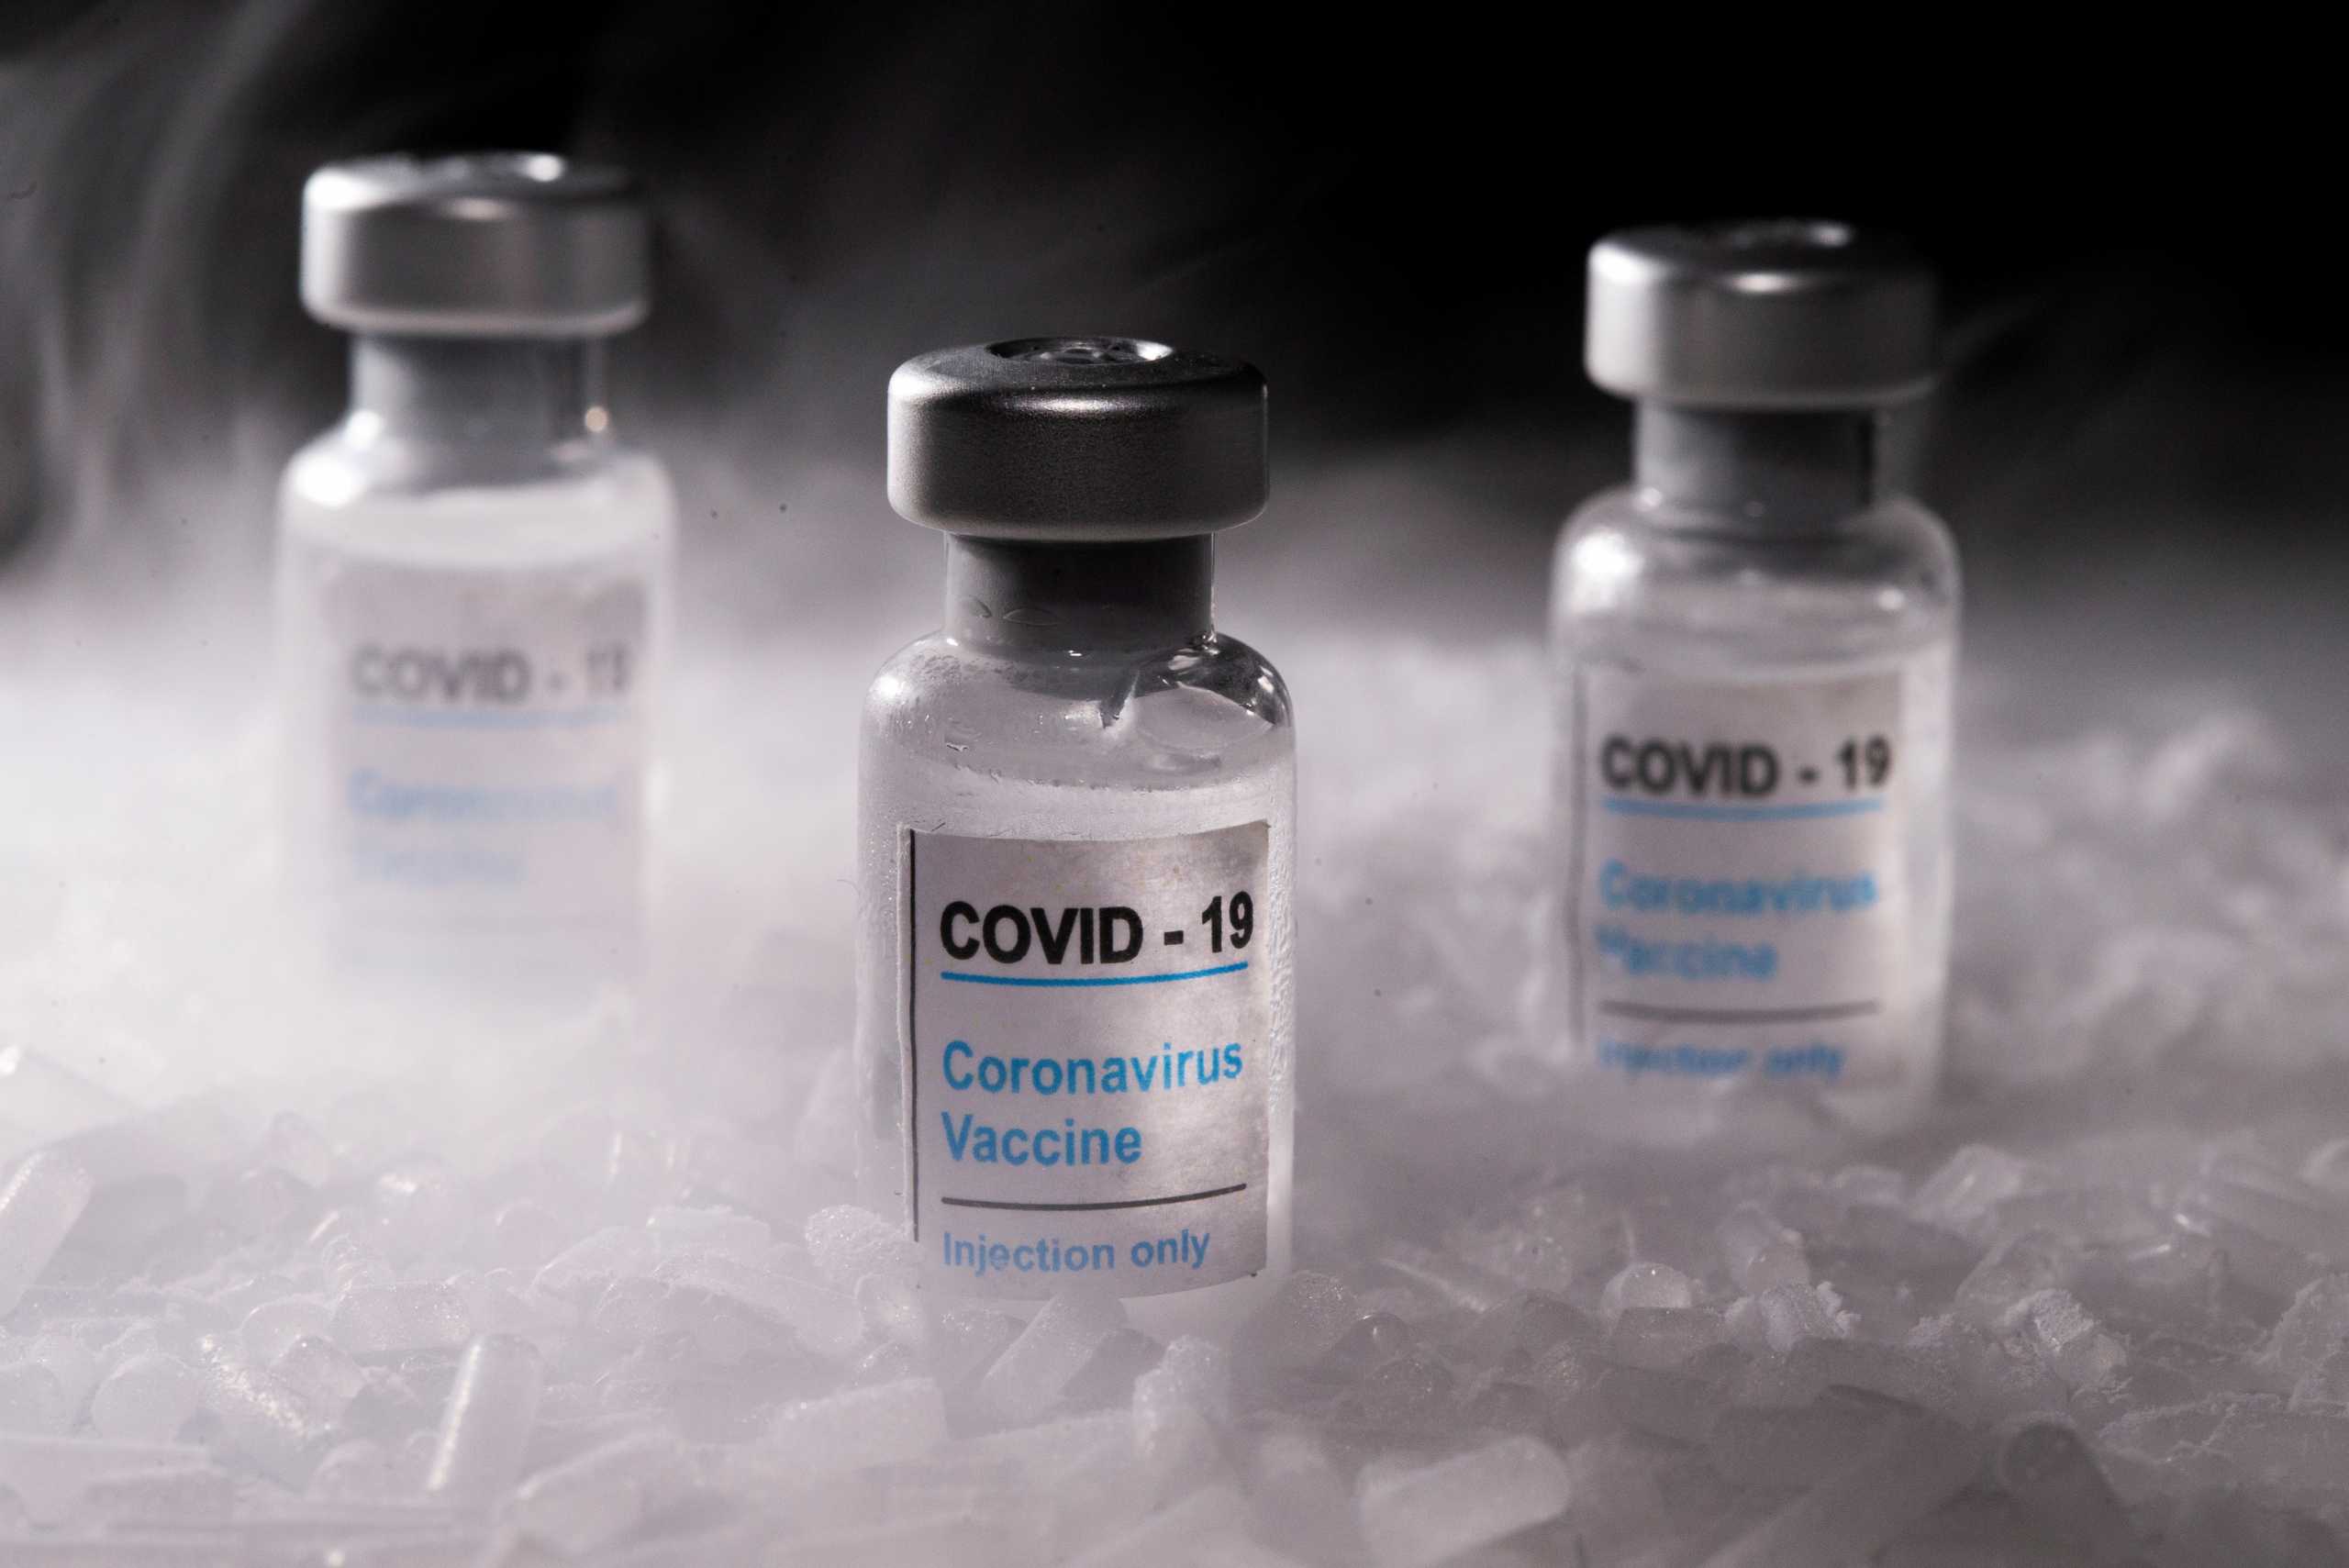 Στις 4 ή 5 Ιανουαρίου αναμένεται να ξεκινήσει ο εμβολιασμός κατά του κορονοϊού στην Ισπανία